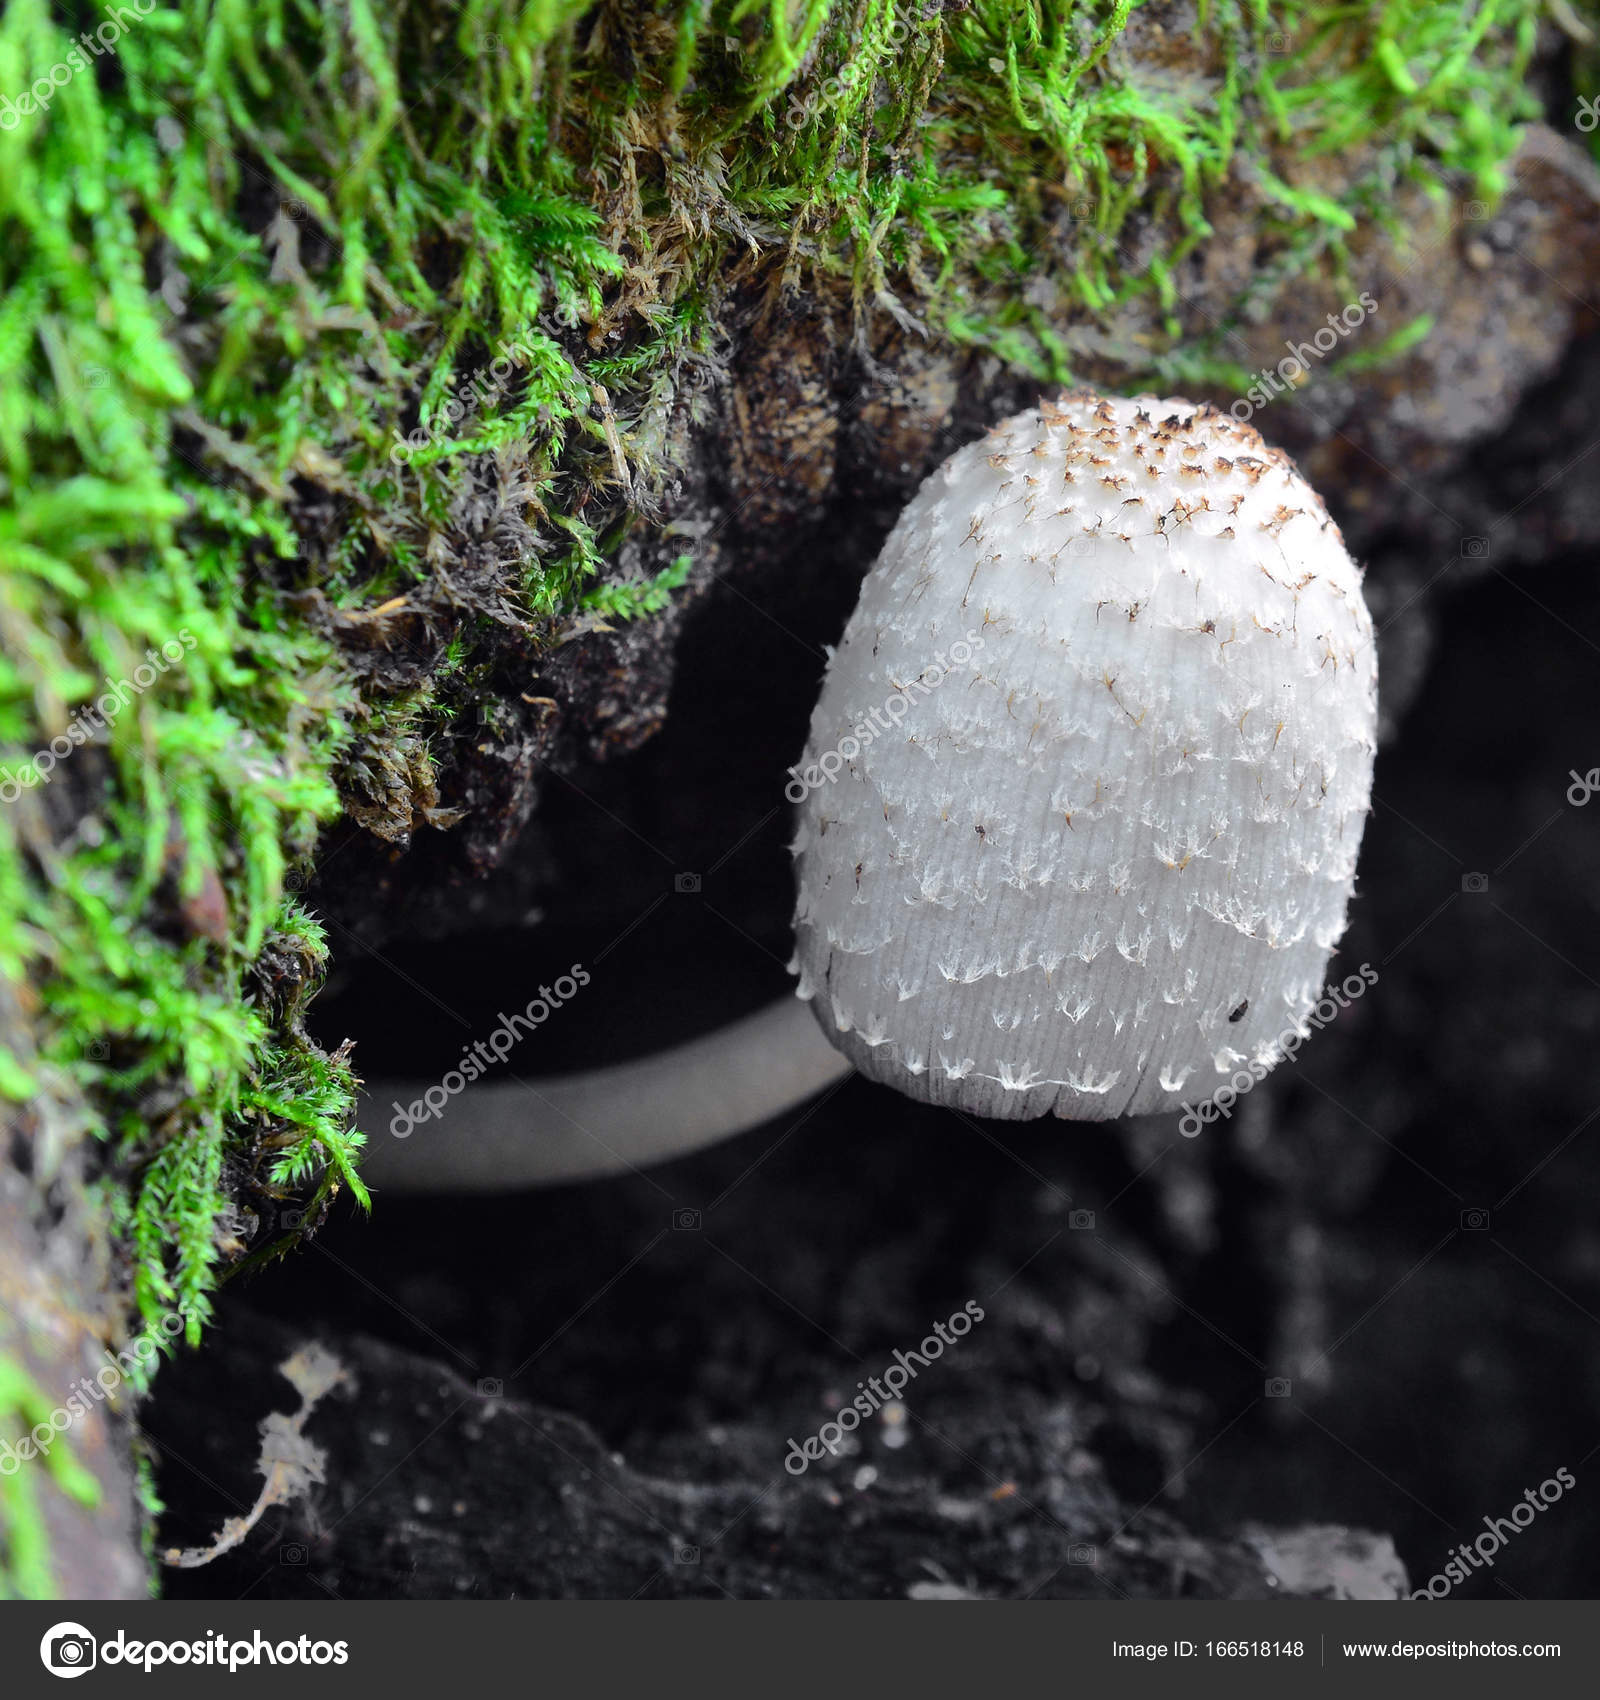 coprinus comatus mushroom — Stock Photo © ibogdan #166518148